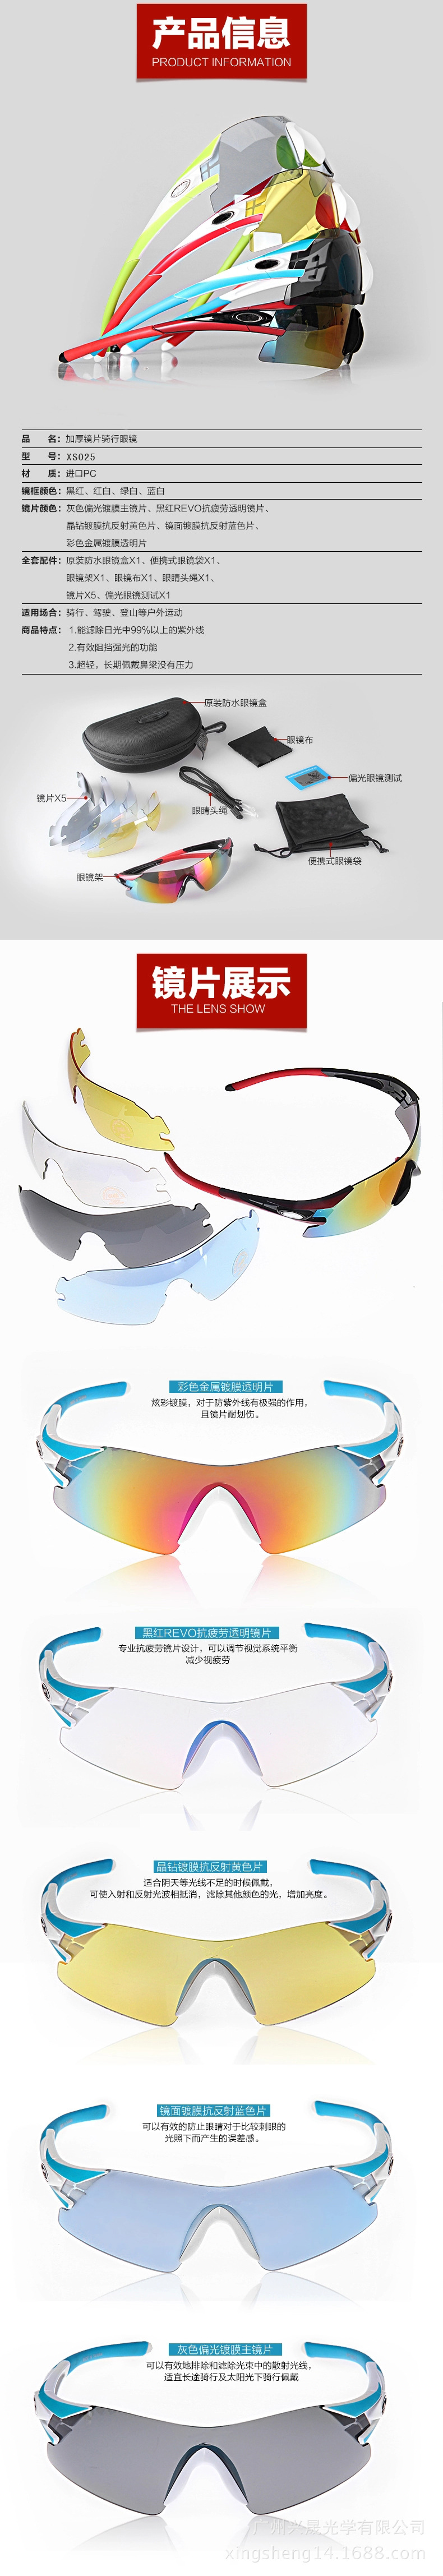 无边框新款太阳眼镜 炫彩骑行眼镜 男女户外运动镜 偏光套装眼镜示例图18